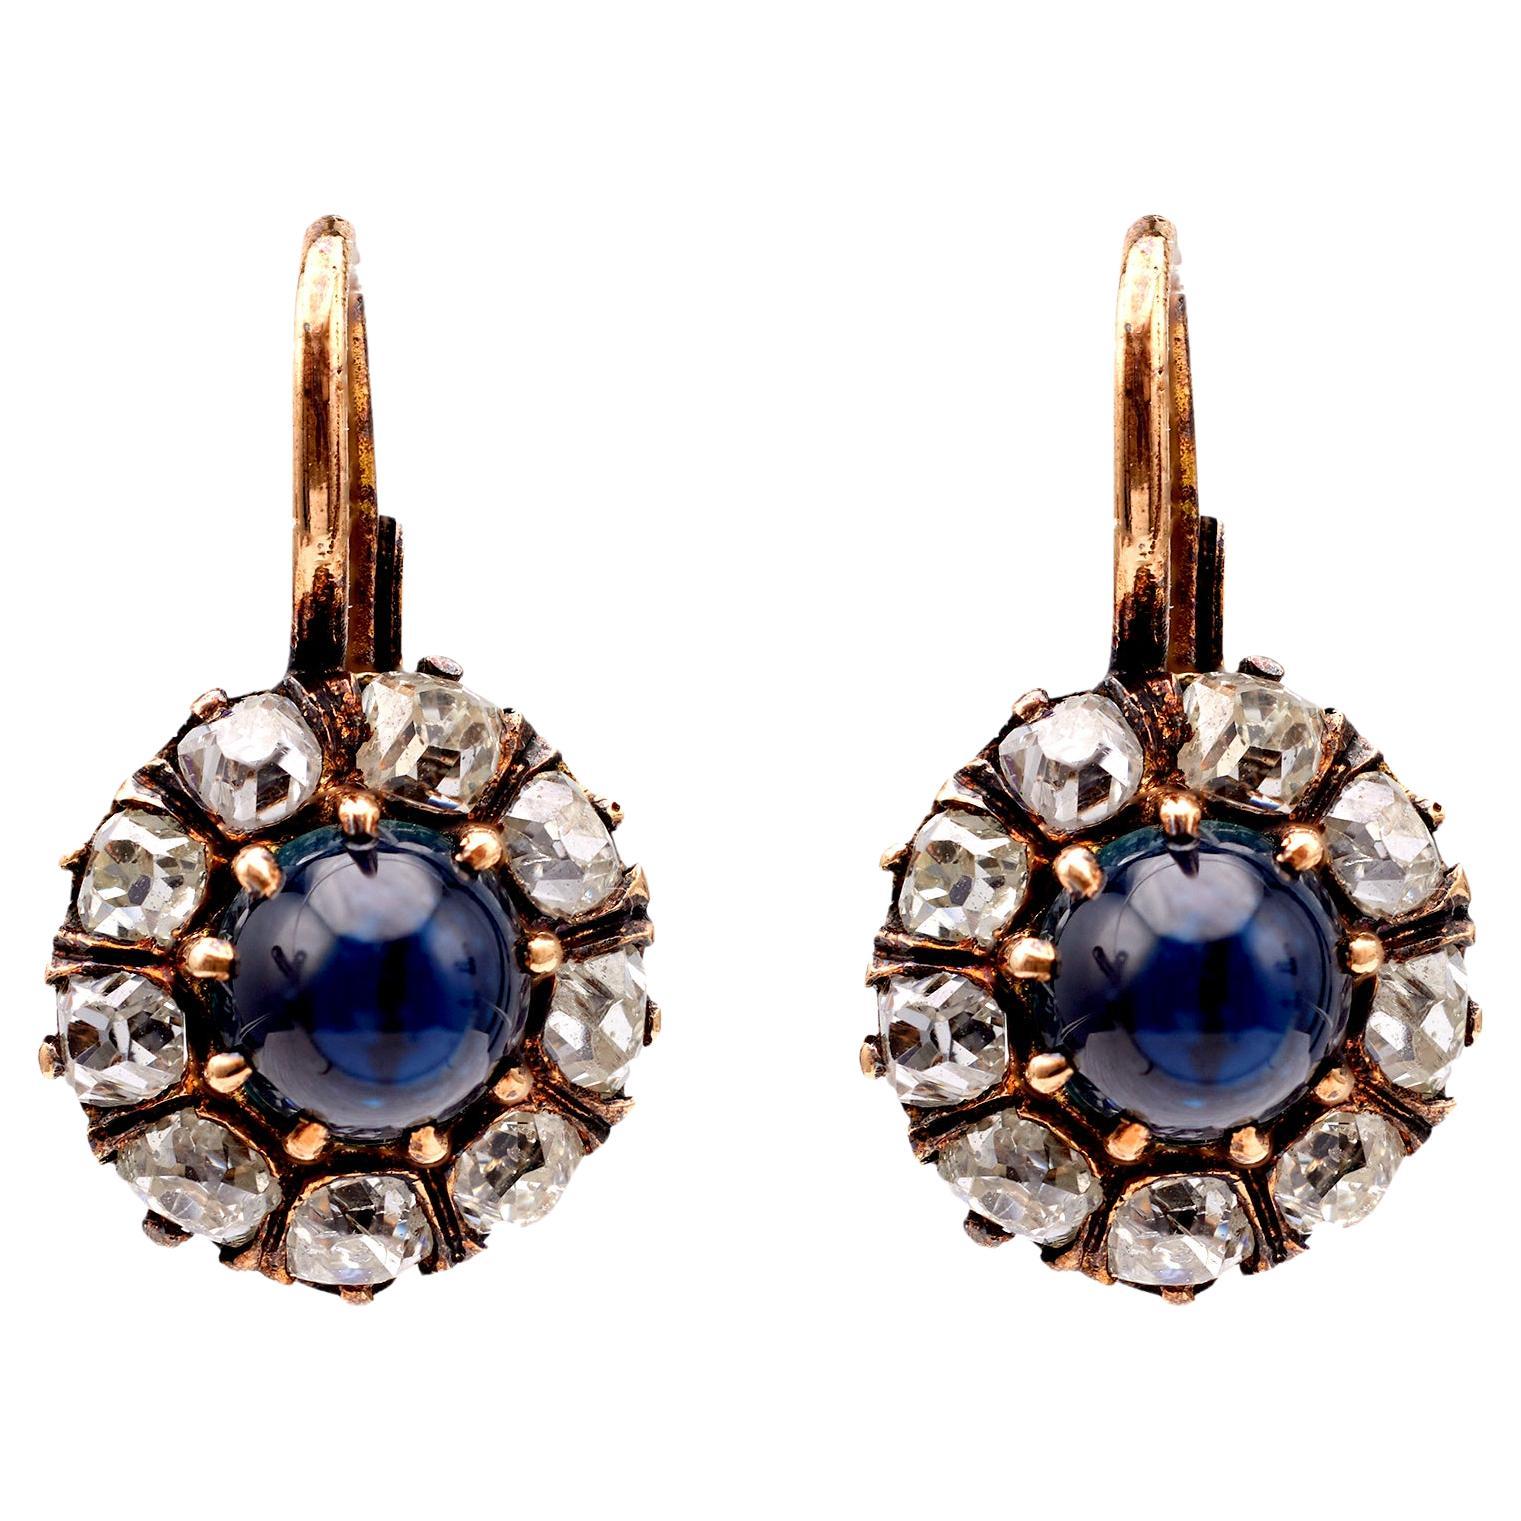 Antique Inspired Sapphire Diamond 18k Rose Gold Cluster Earrings